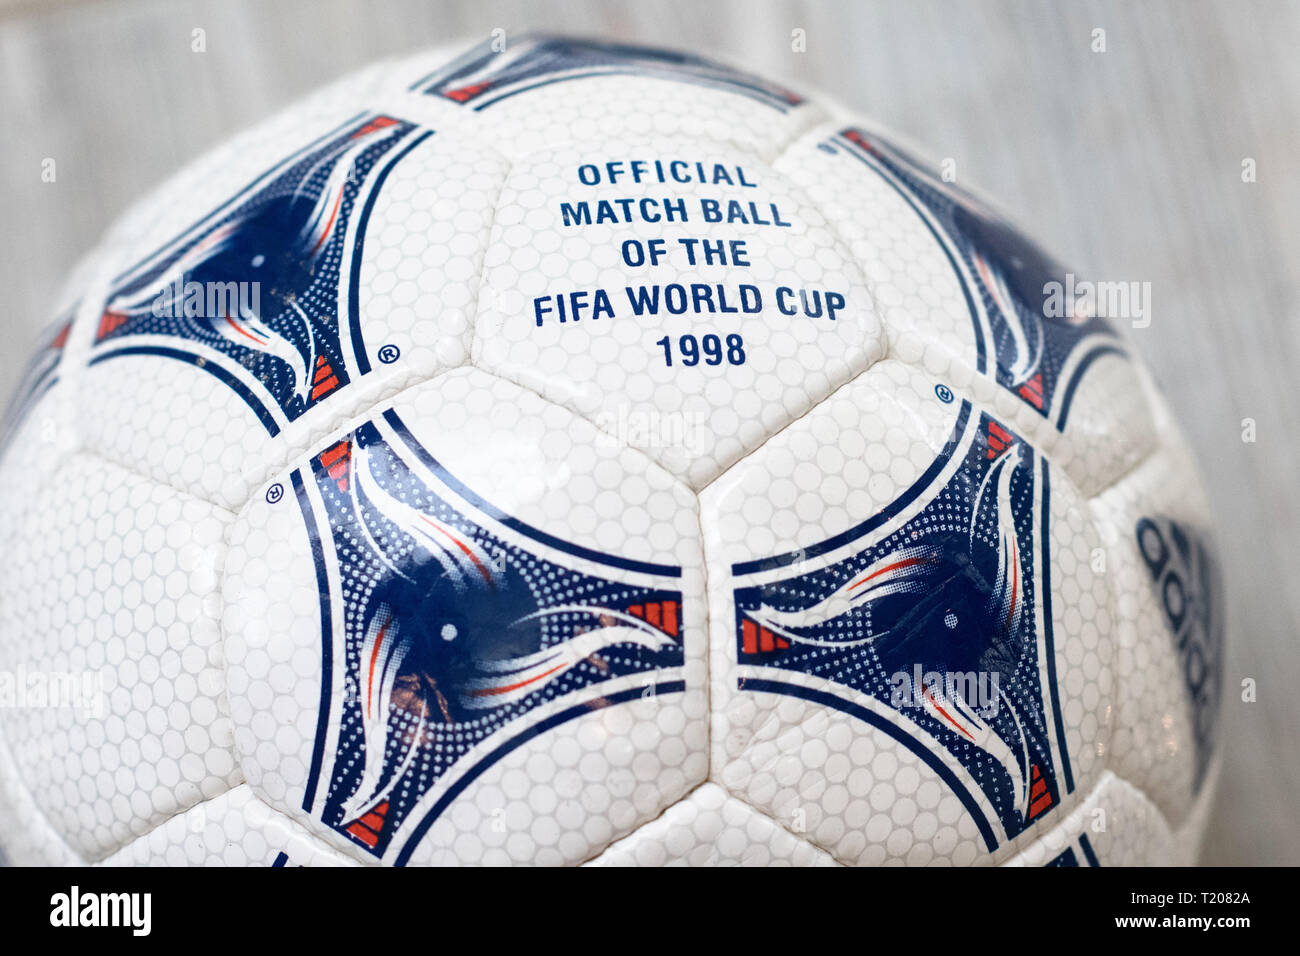 Ballon de match OFFICIEL DE LA COUPE DU MONDE DE LA FIFA 1998 Photo Stock -  Alamy